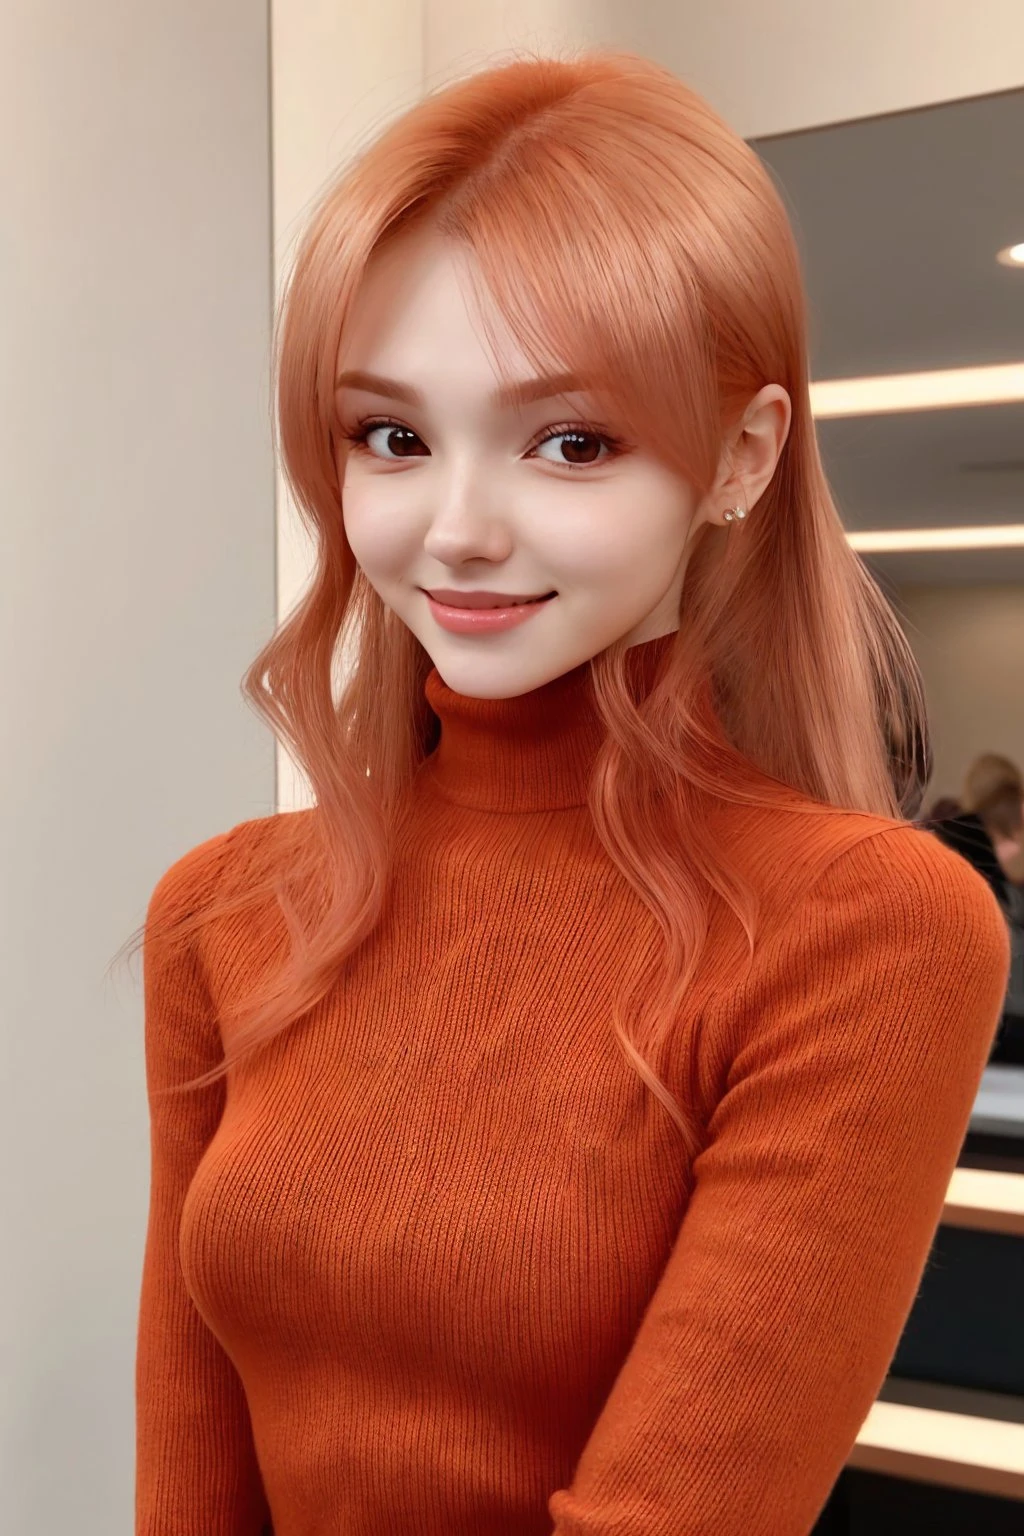 ElinaKarimova 上半身照片, 专注于笑脸, 穿著高領毛衣 , 她的銅橙色頭髮被設計為分層剪裁,